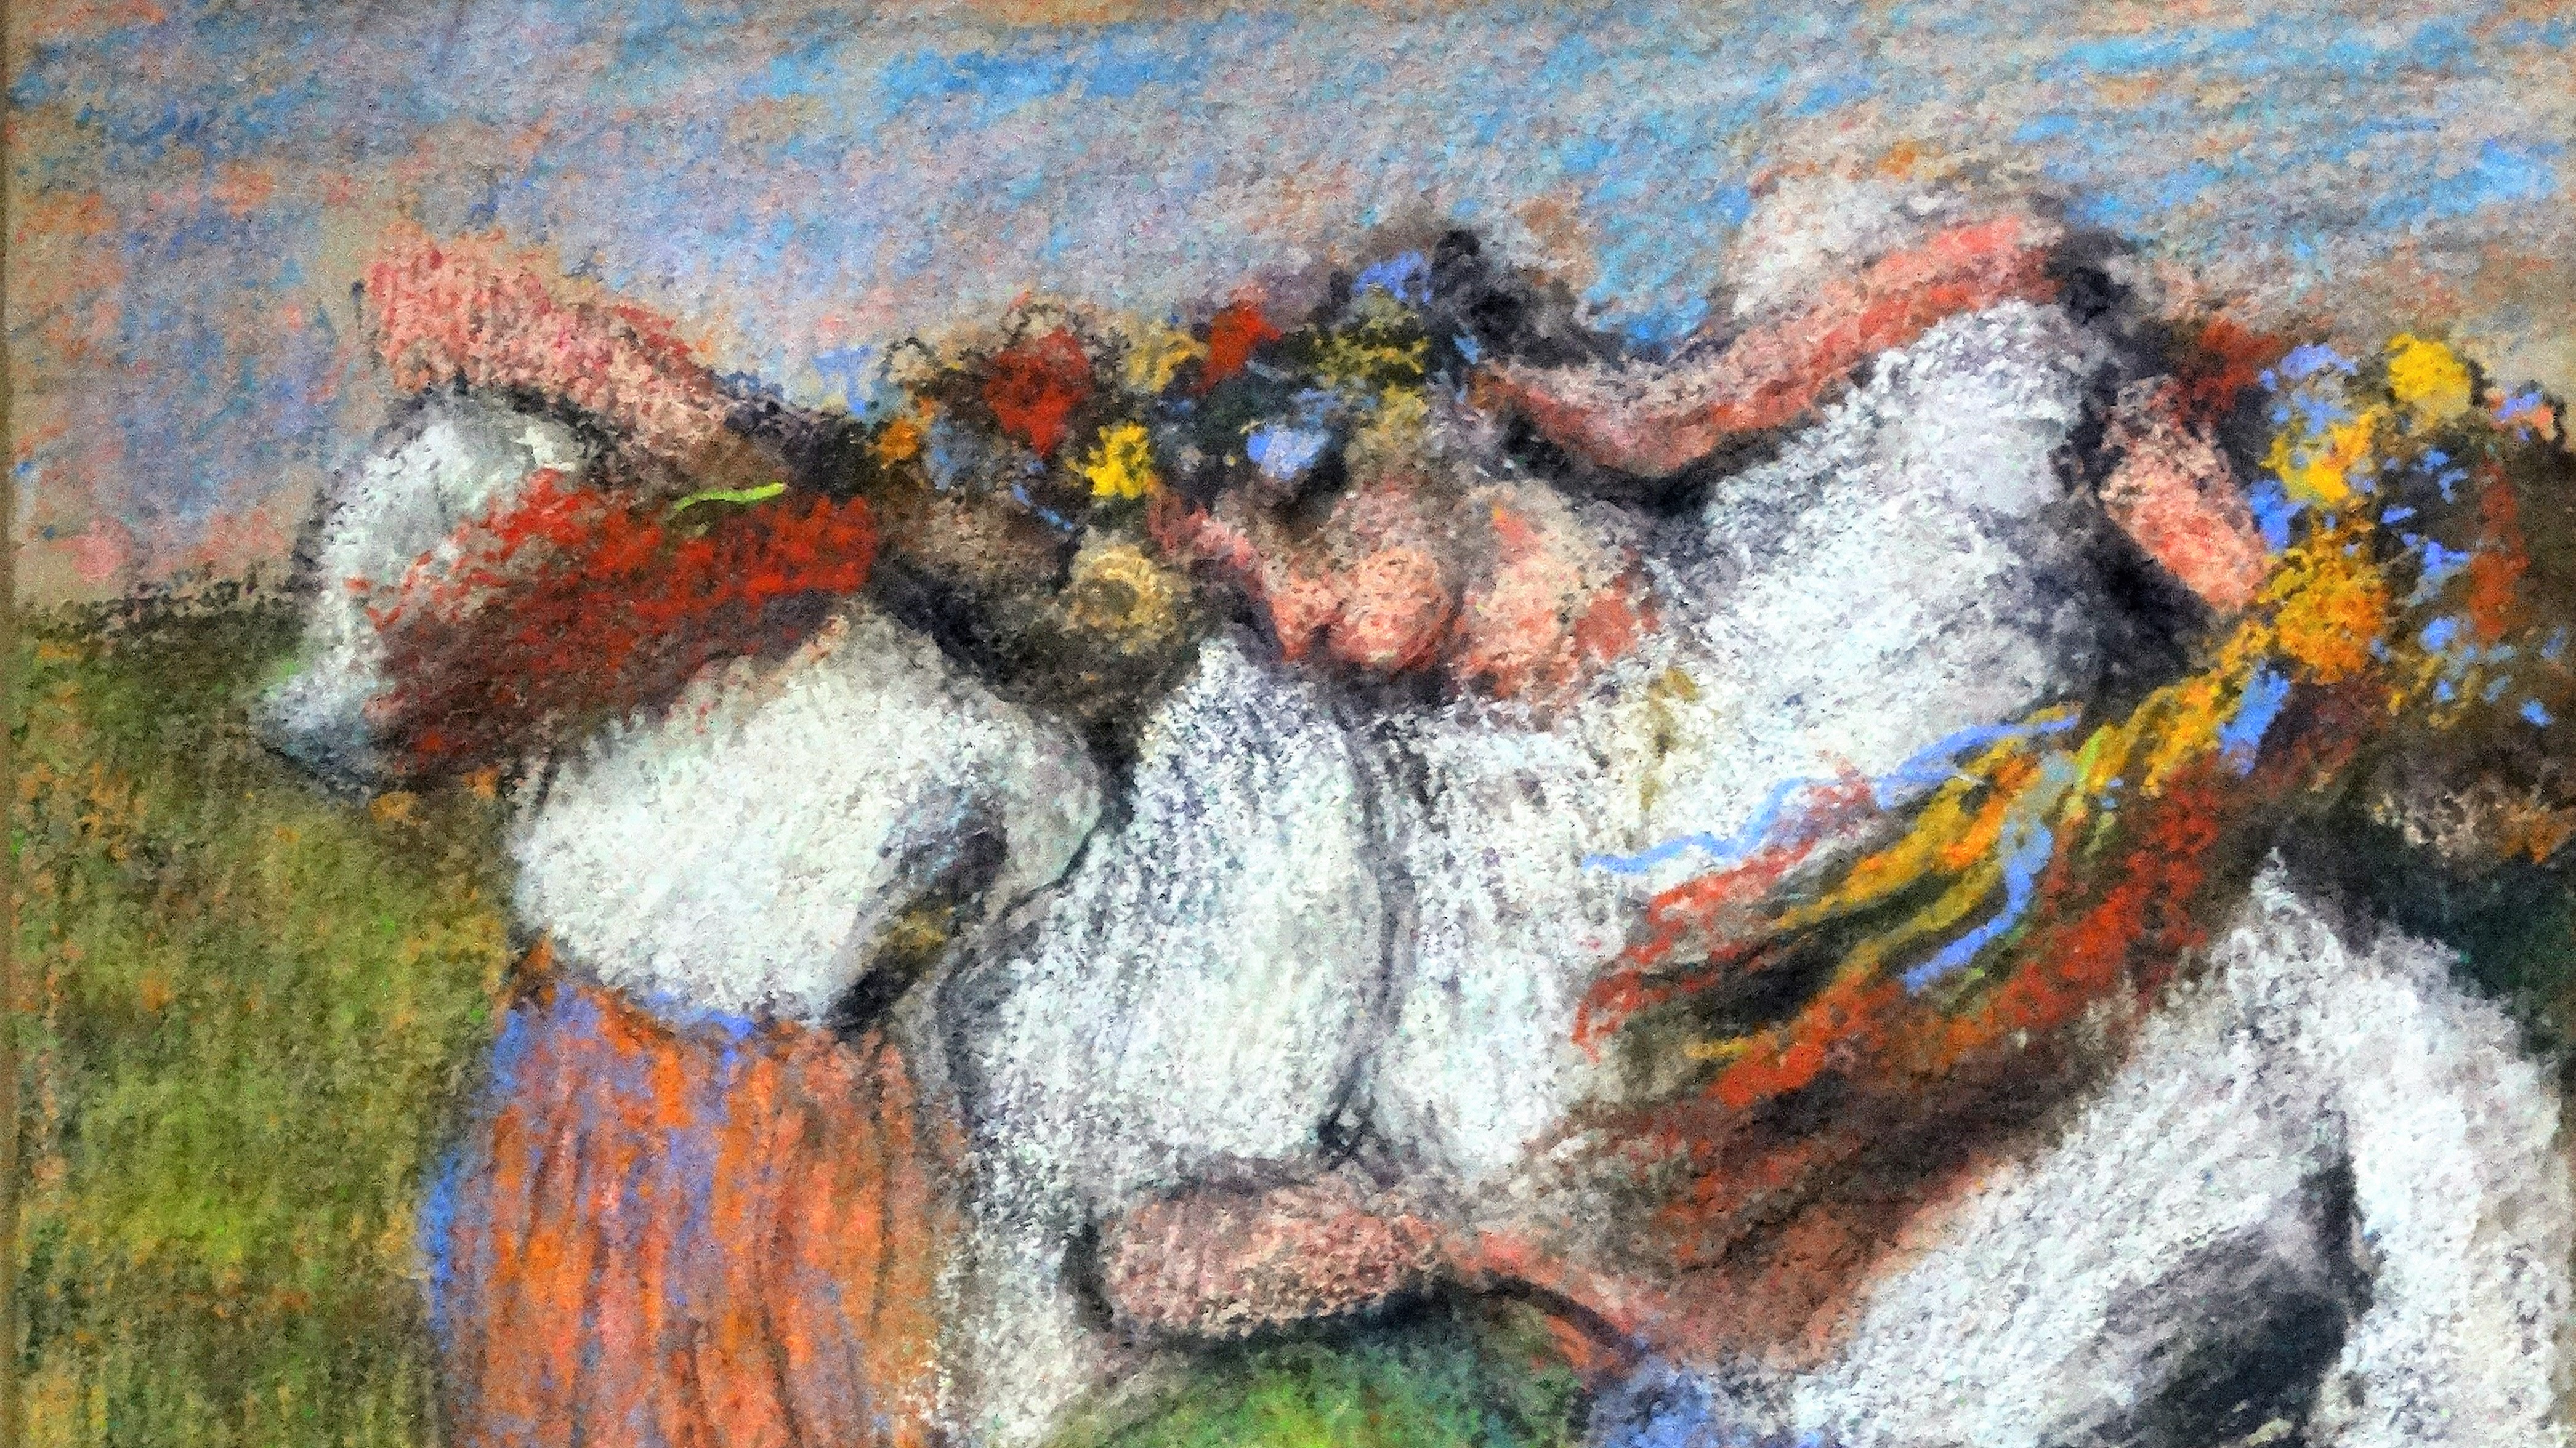 Átneveztek egy Degas-képet, mostantól Ukrán táncosok a címe